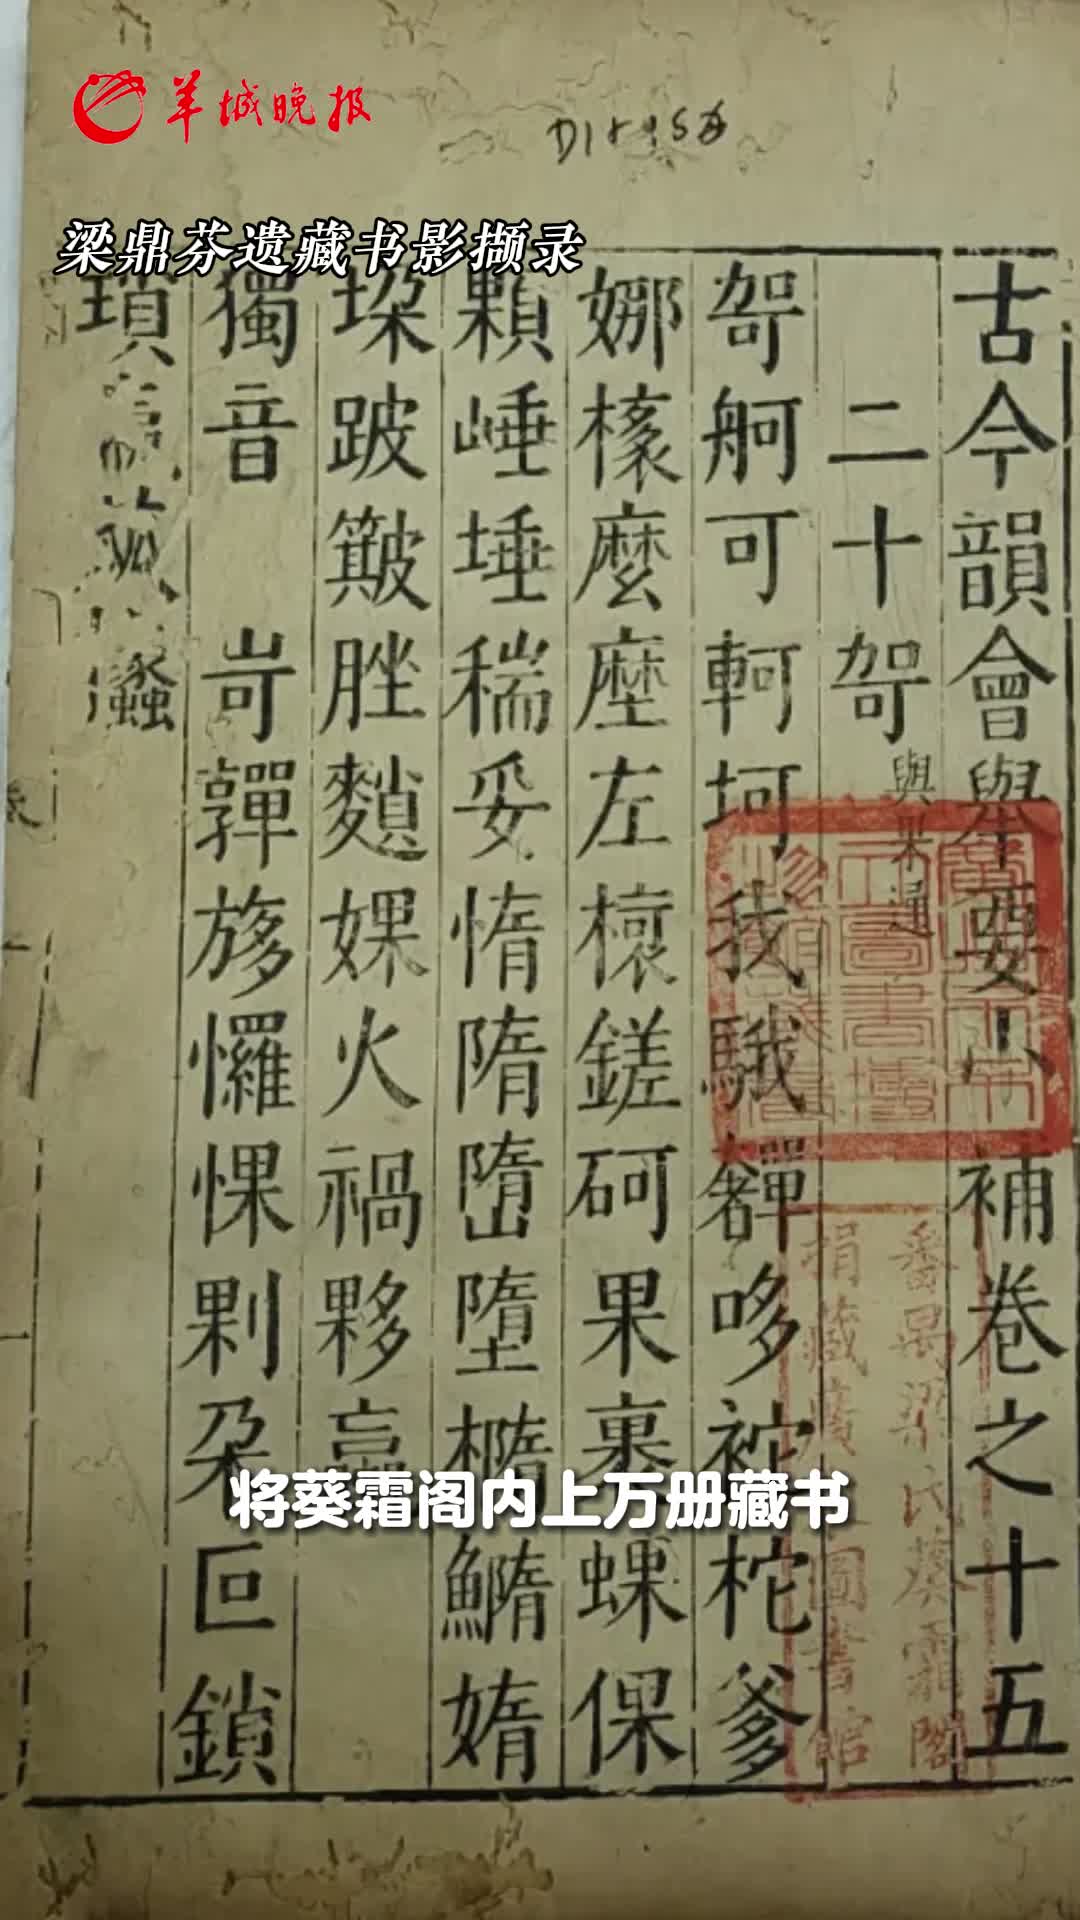 Lingnan Talk | Visite uma biblioteca perdida em Guangzhou.